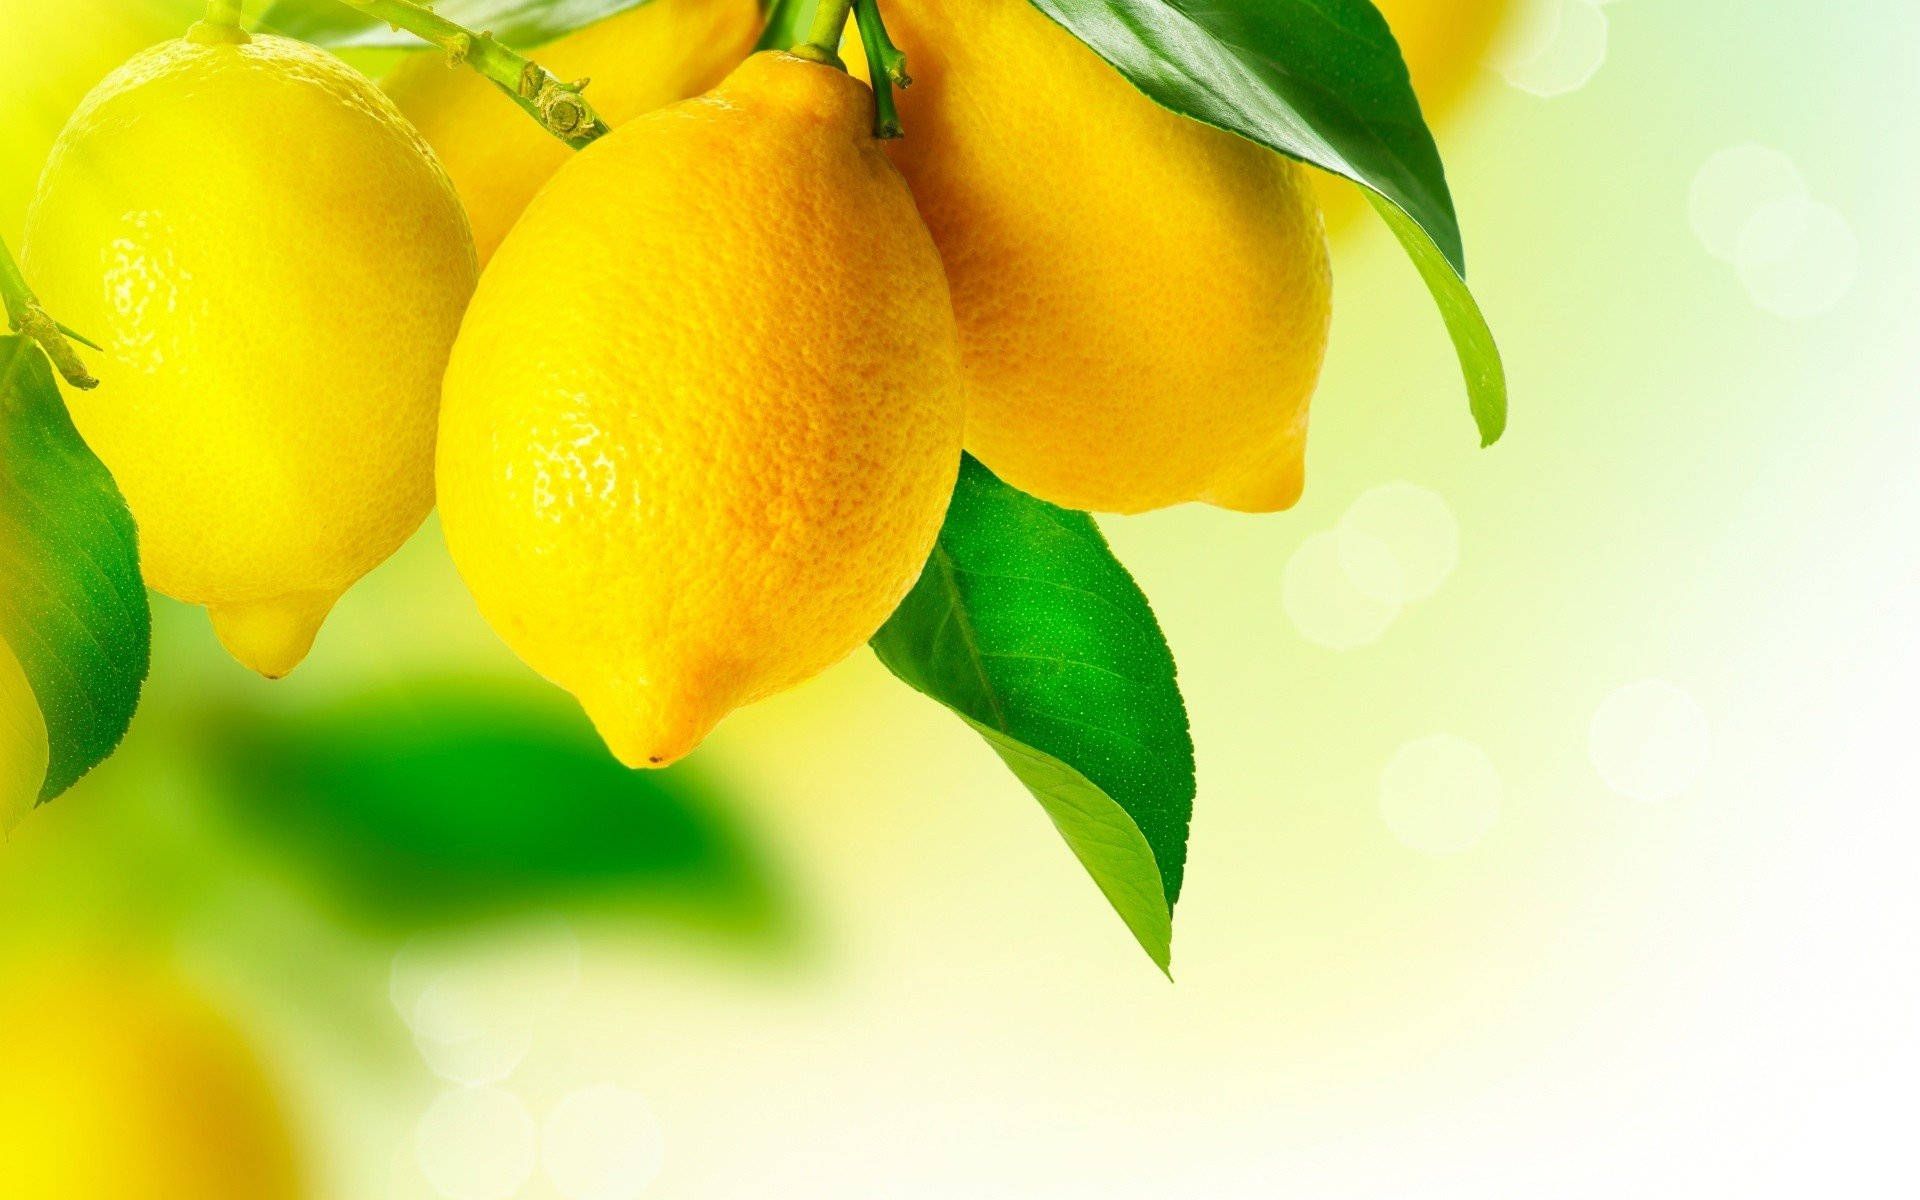 A branch of lemons with green leaves - Lemon